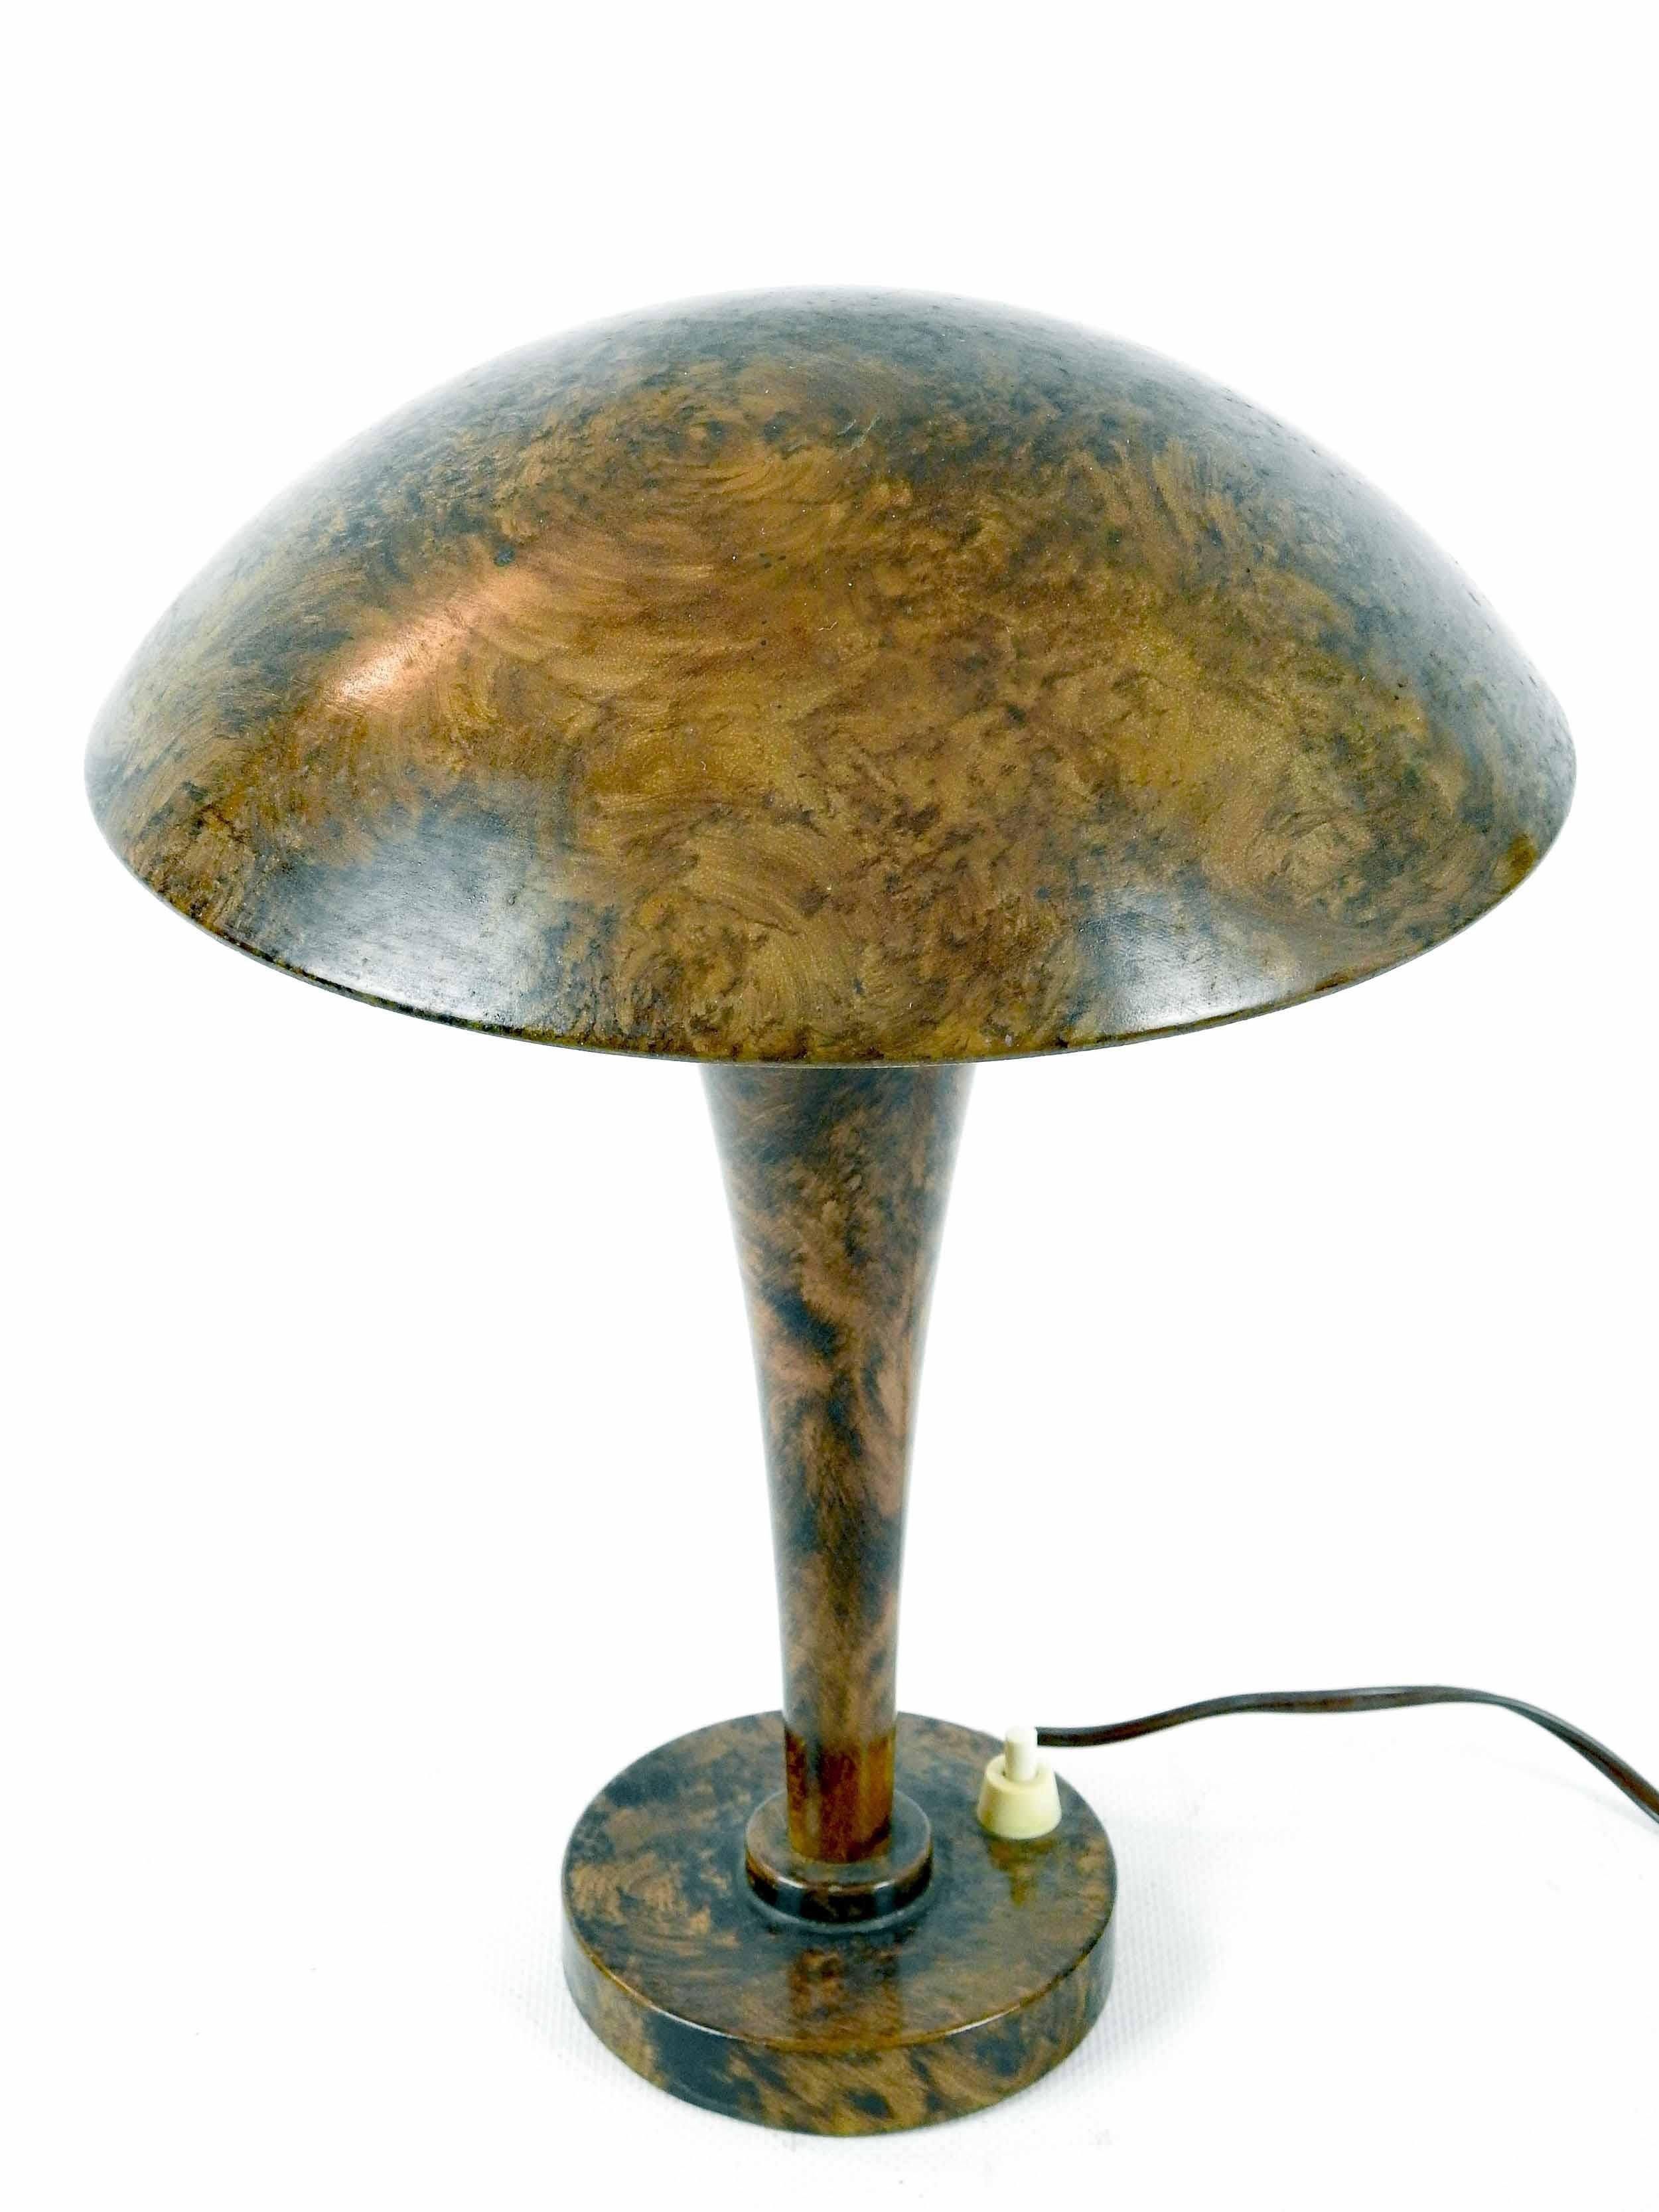 Jean PERZEL (1892-1986) für Claude Lumière.
Schreibtischlampe aus lackiertem Metall in Gratoptik, ausgestellte Rohrbeine und runder Sockel, Holophane-Glas mit einem Lampenschirm.
Markiert unter dem Sockel.
